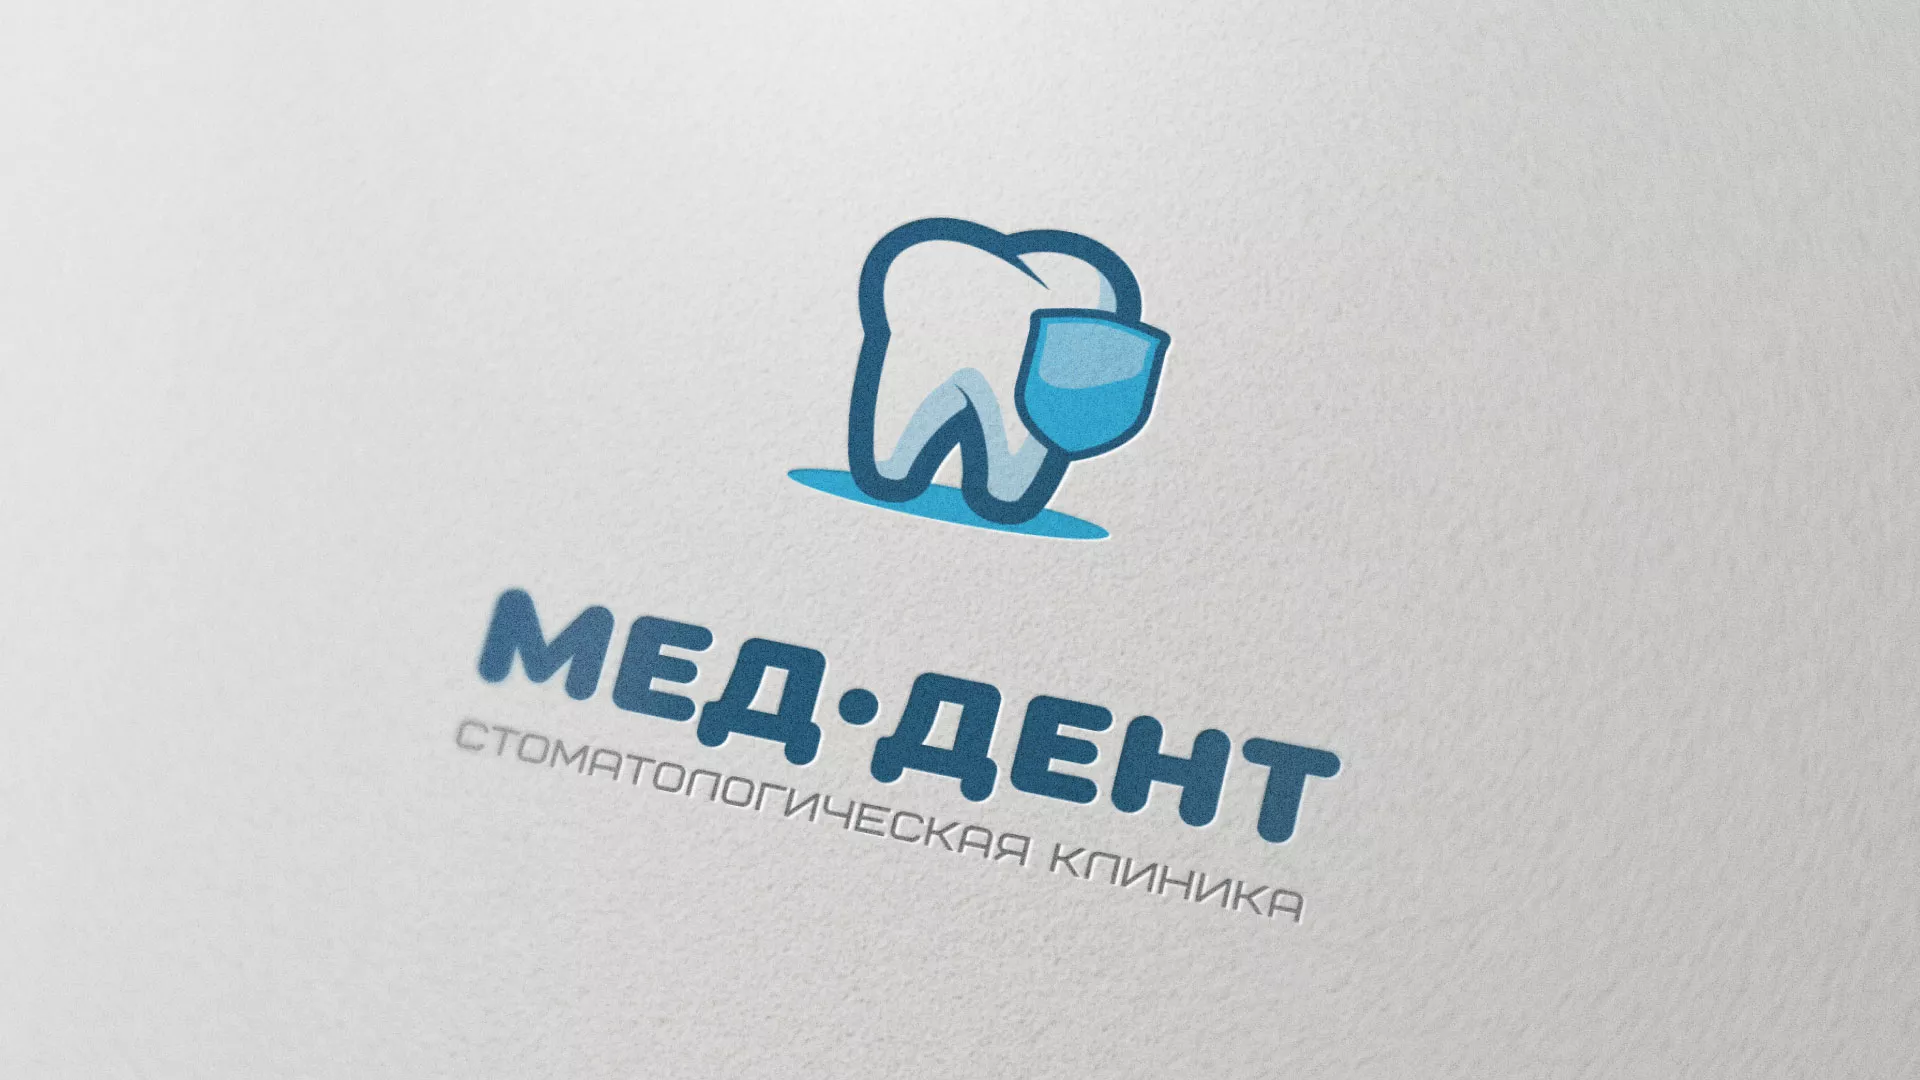 Разработка логотипа стоматологической клиники «МЕД-ДЕНТ» в Звенигово